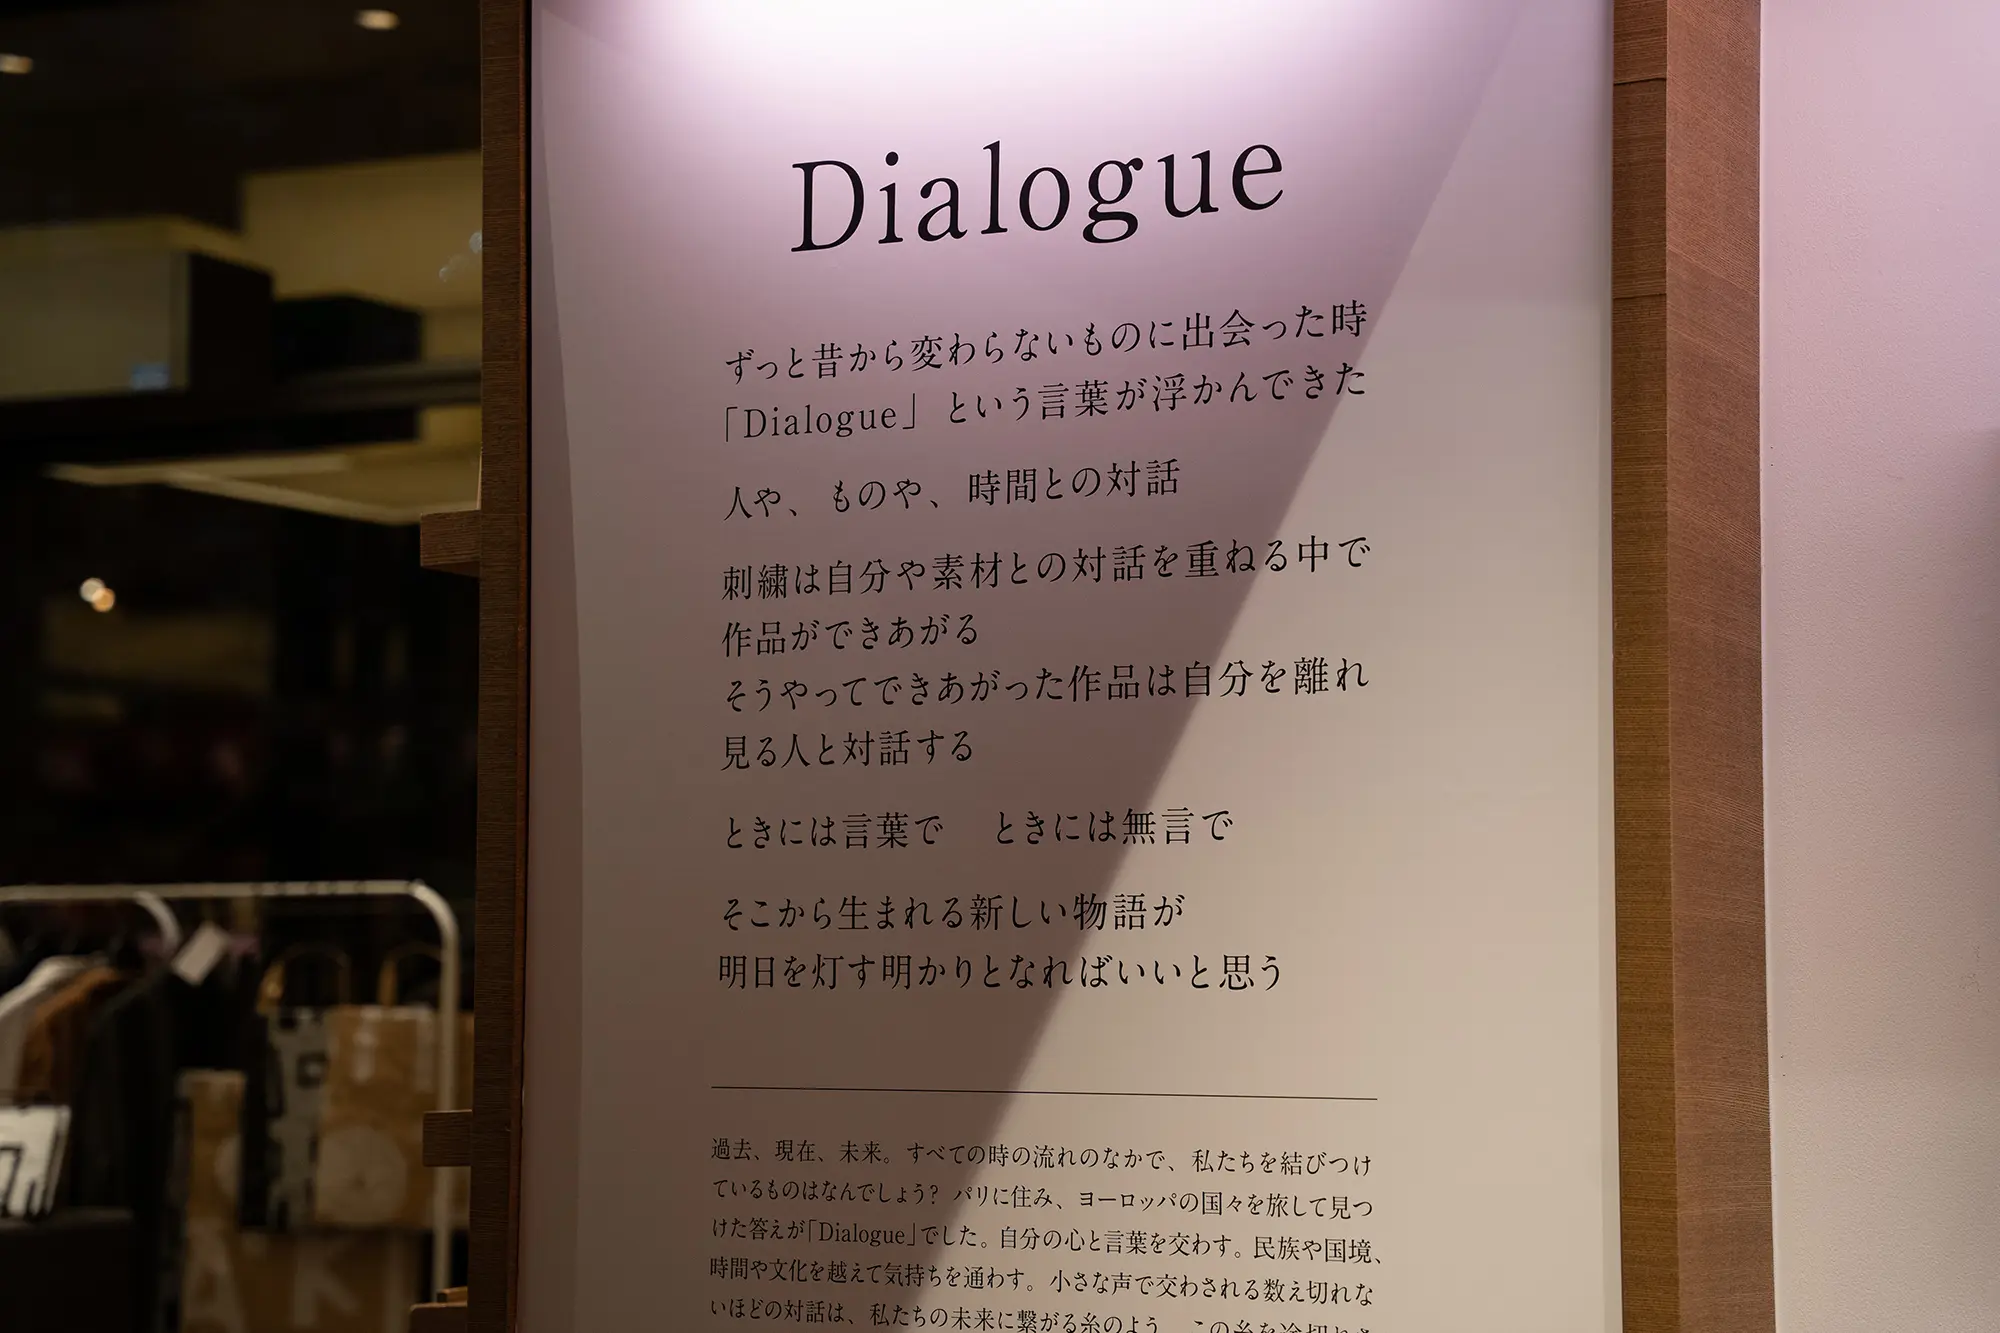 杉浦今日子 Exhibition 個展「Dialogue」